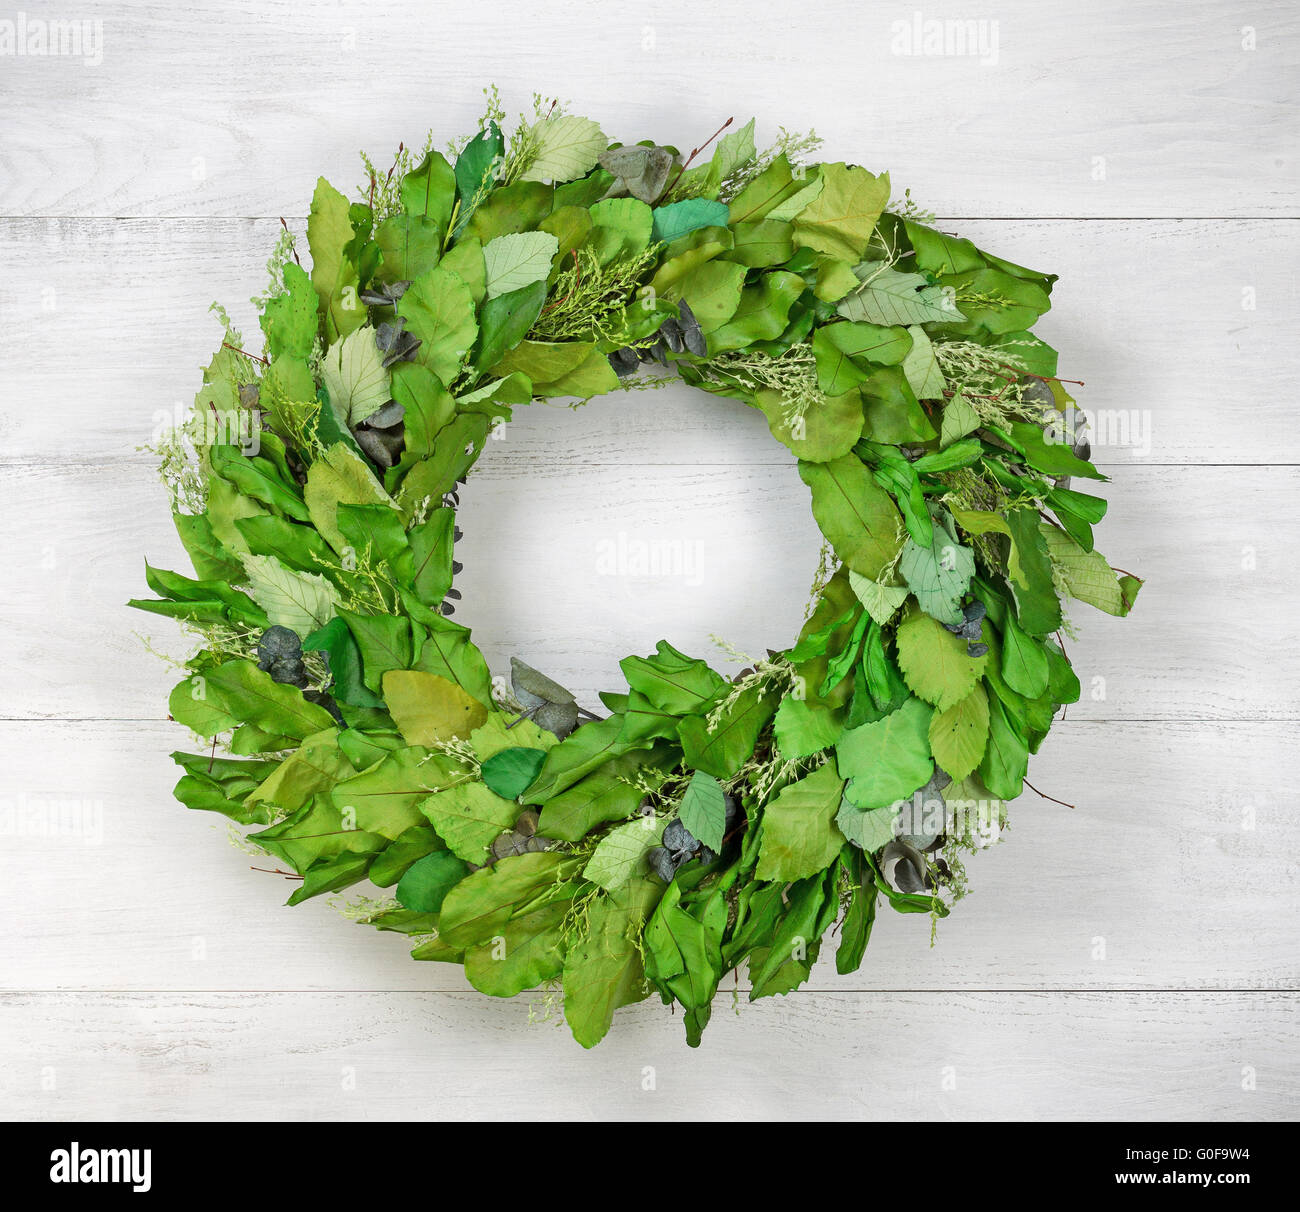 Seasonal green leaf wreath on rustic white wood Stock Photo